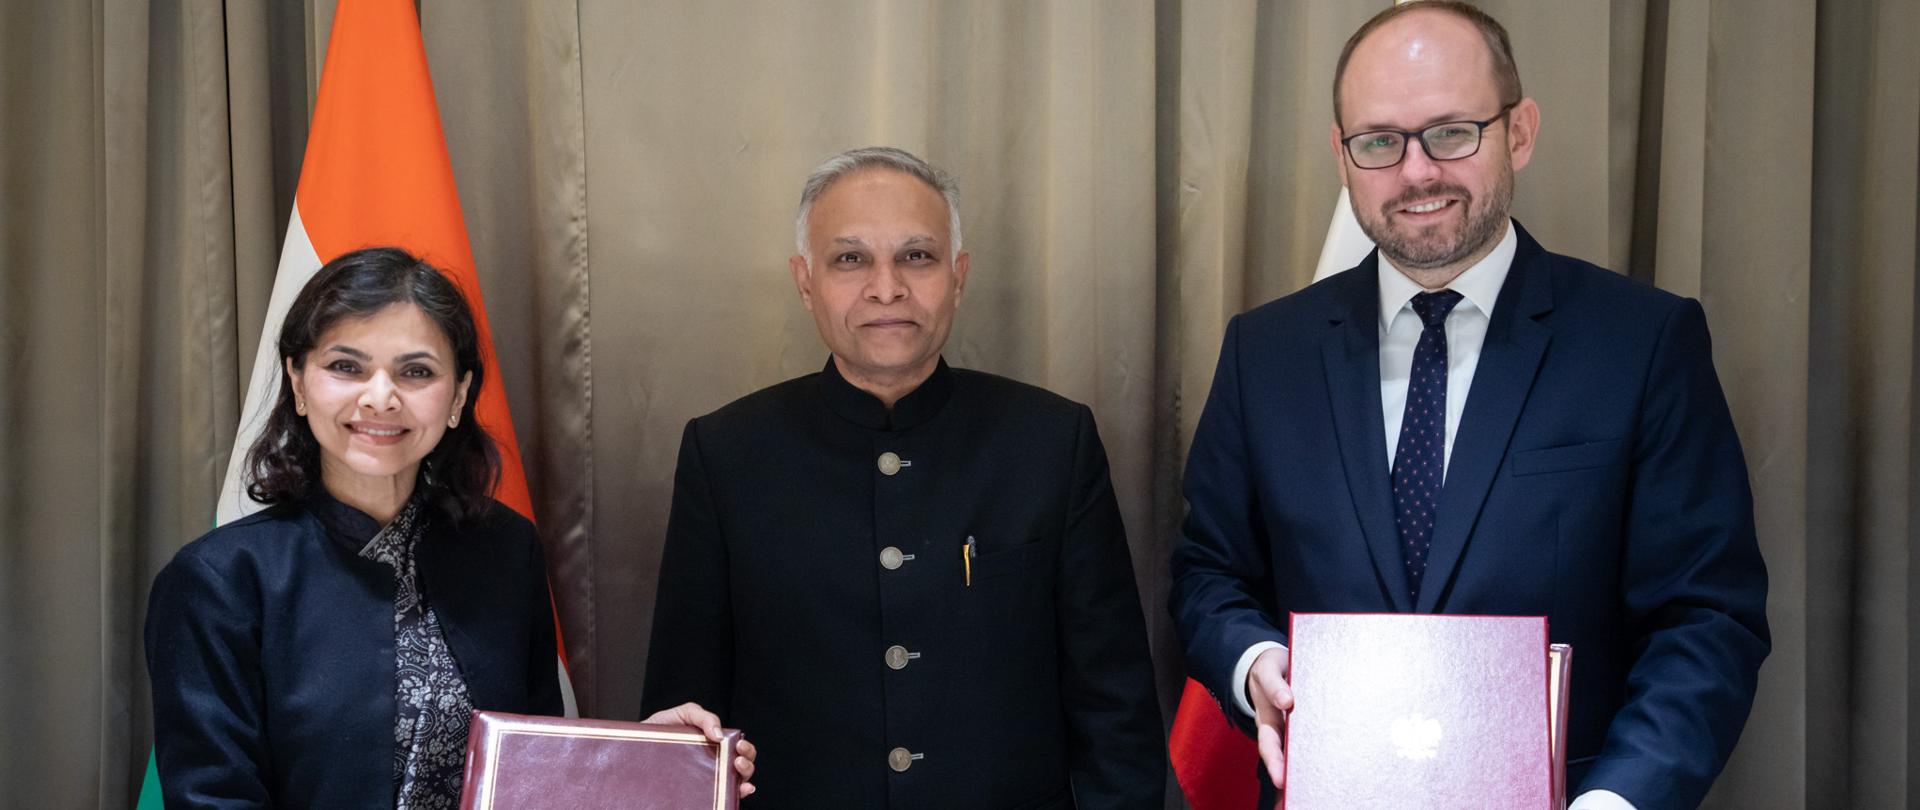 
Polsko-indyjskie konsultacje polityczne na szczeblu wiceministrów spraw zagranicznych
